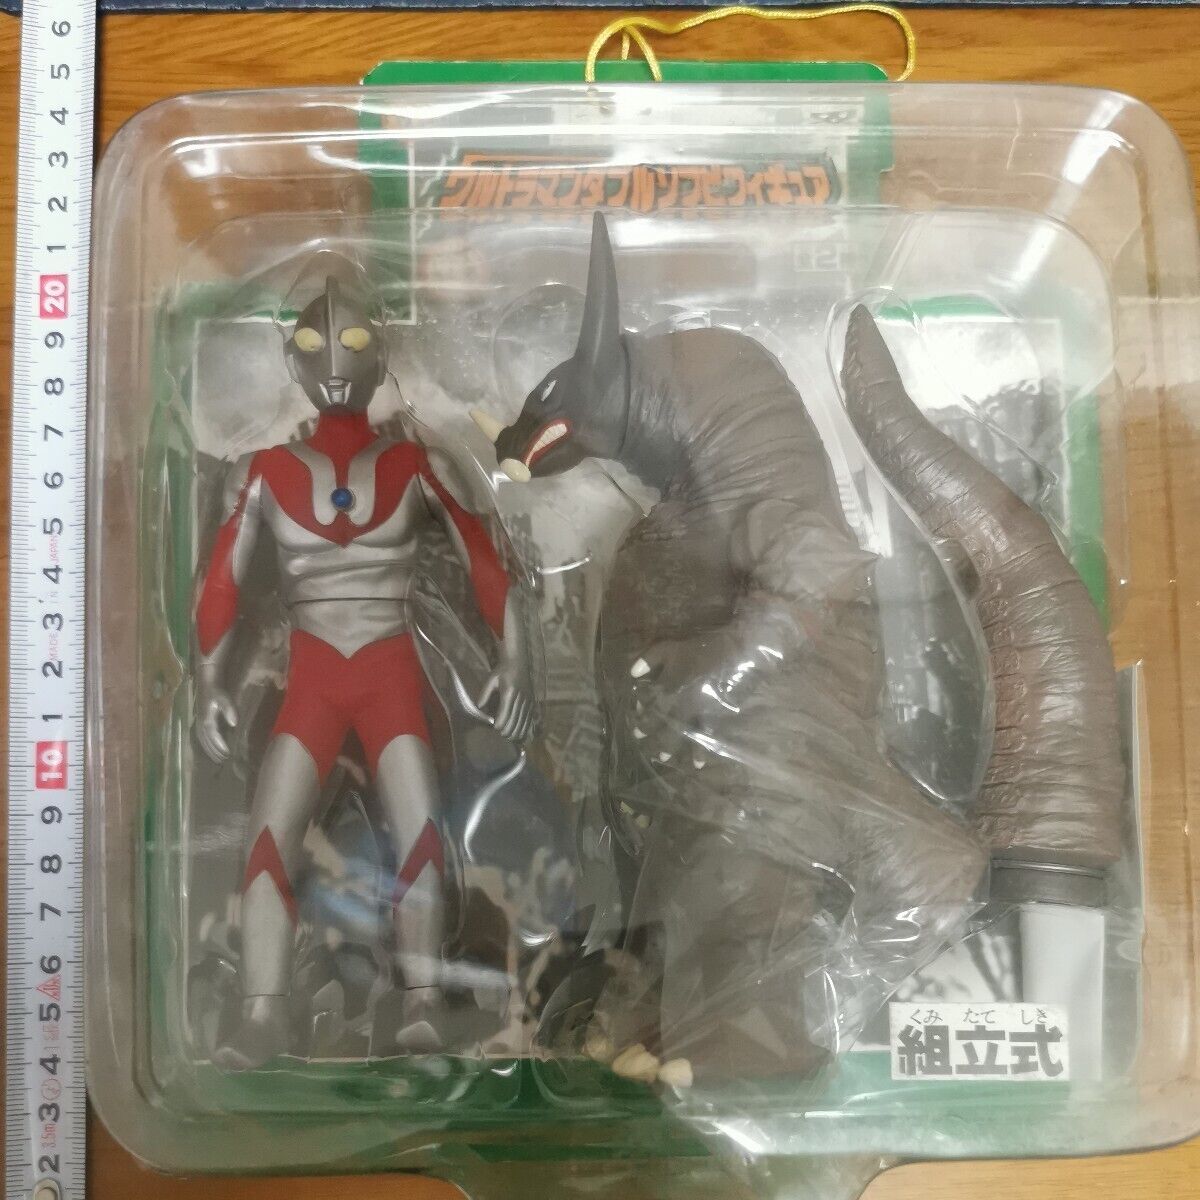 Ultraman Ultra Hero Ultra Monster Gomorrah First Ultraman B Type Prize Limited